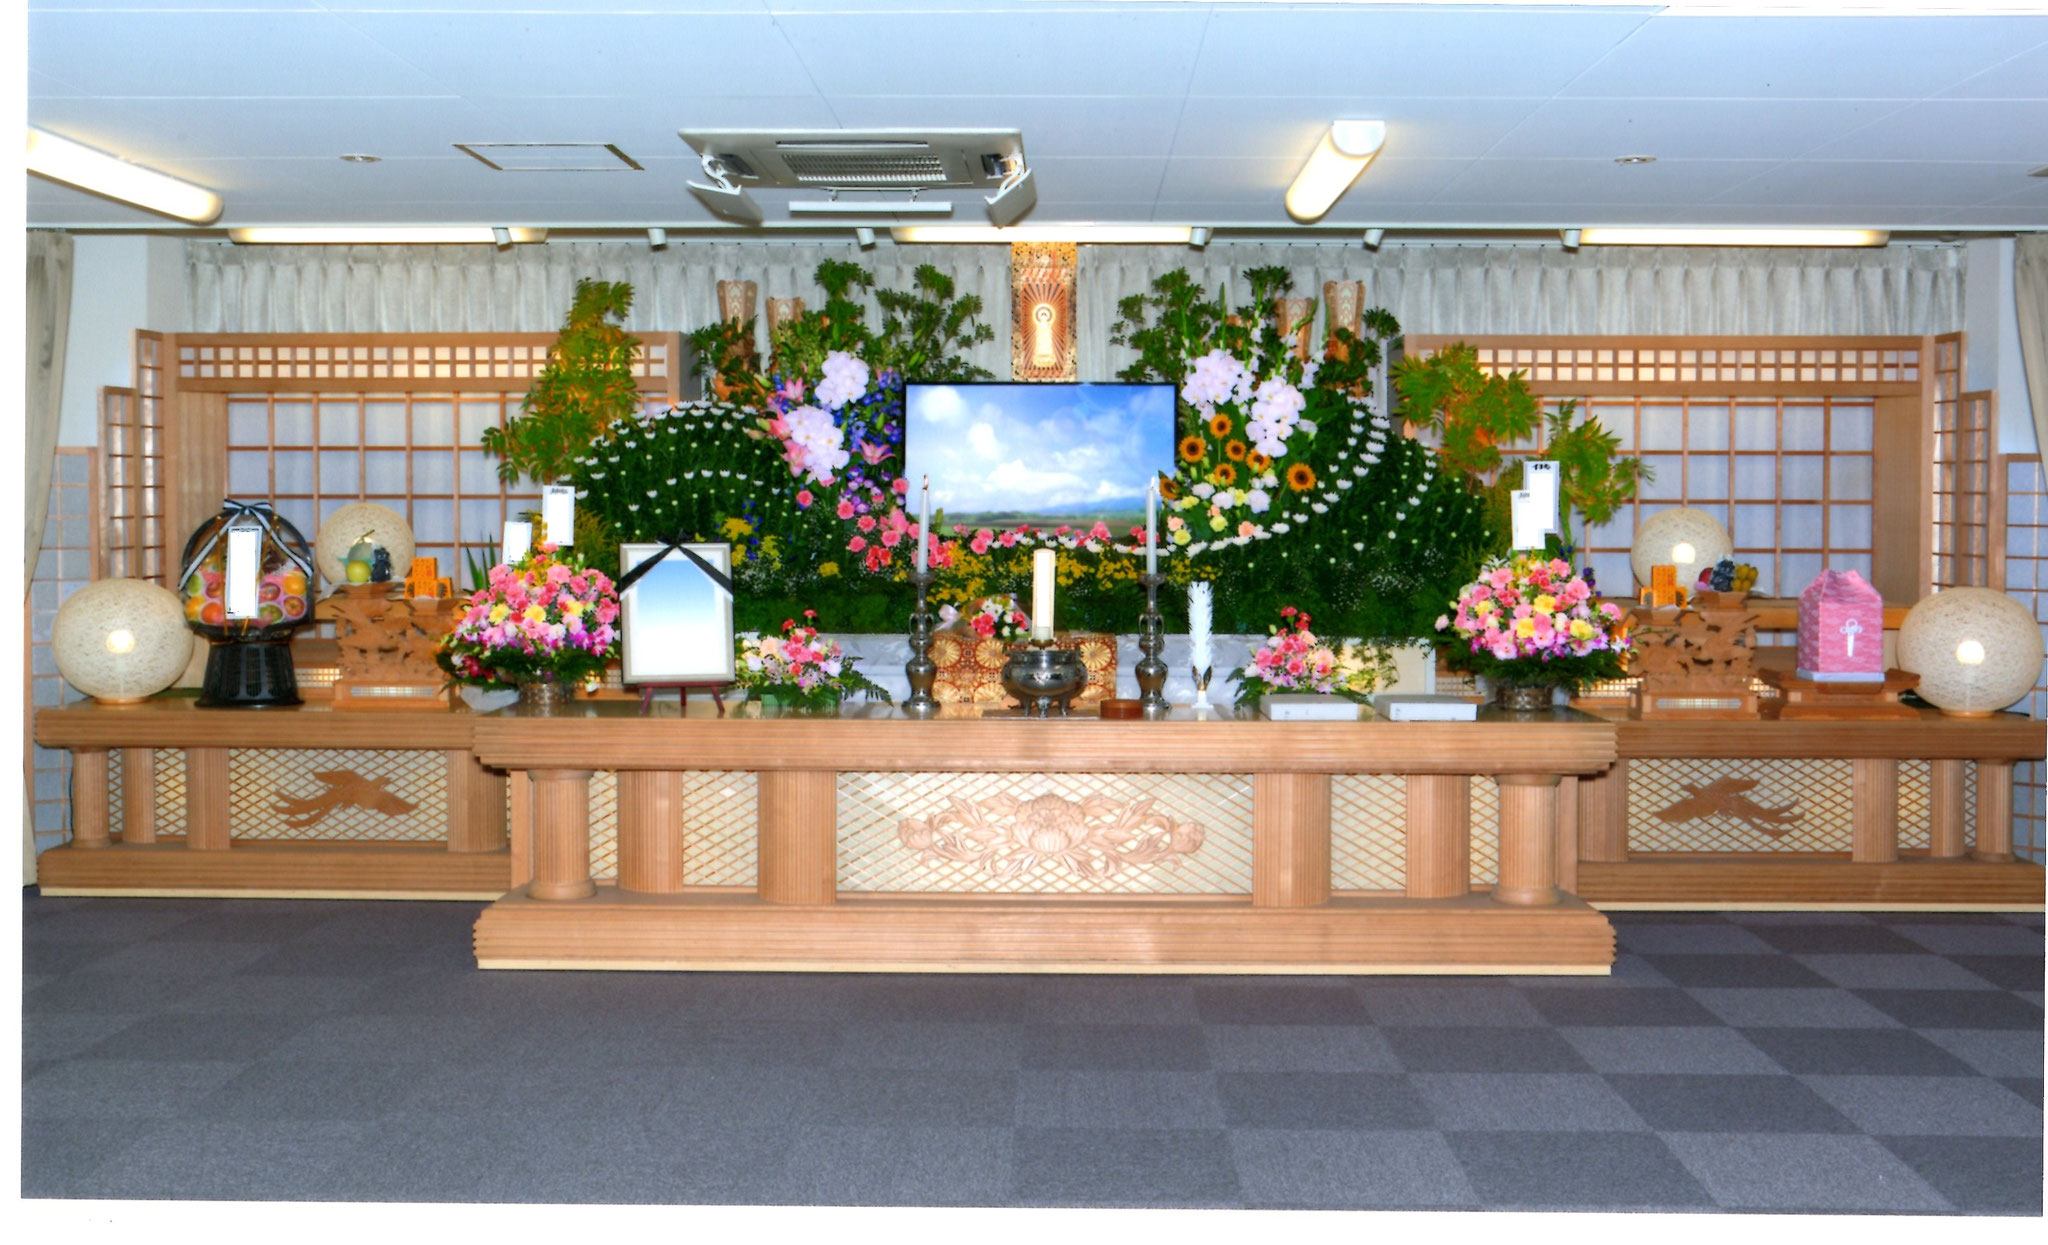 札幌市での家族葬・葬儀ならメモリーズてんそうへ。齋場プランの一例です。